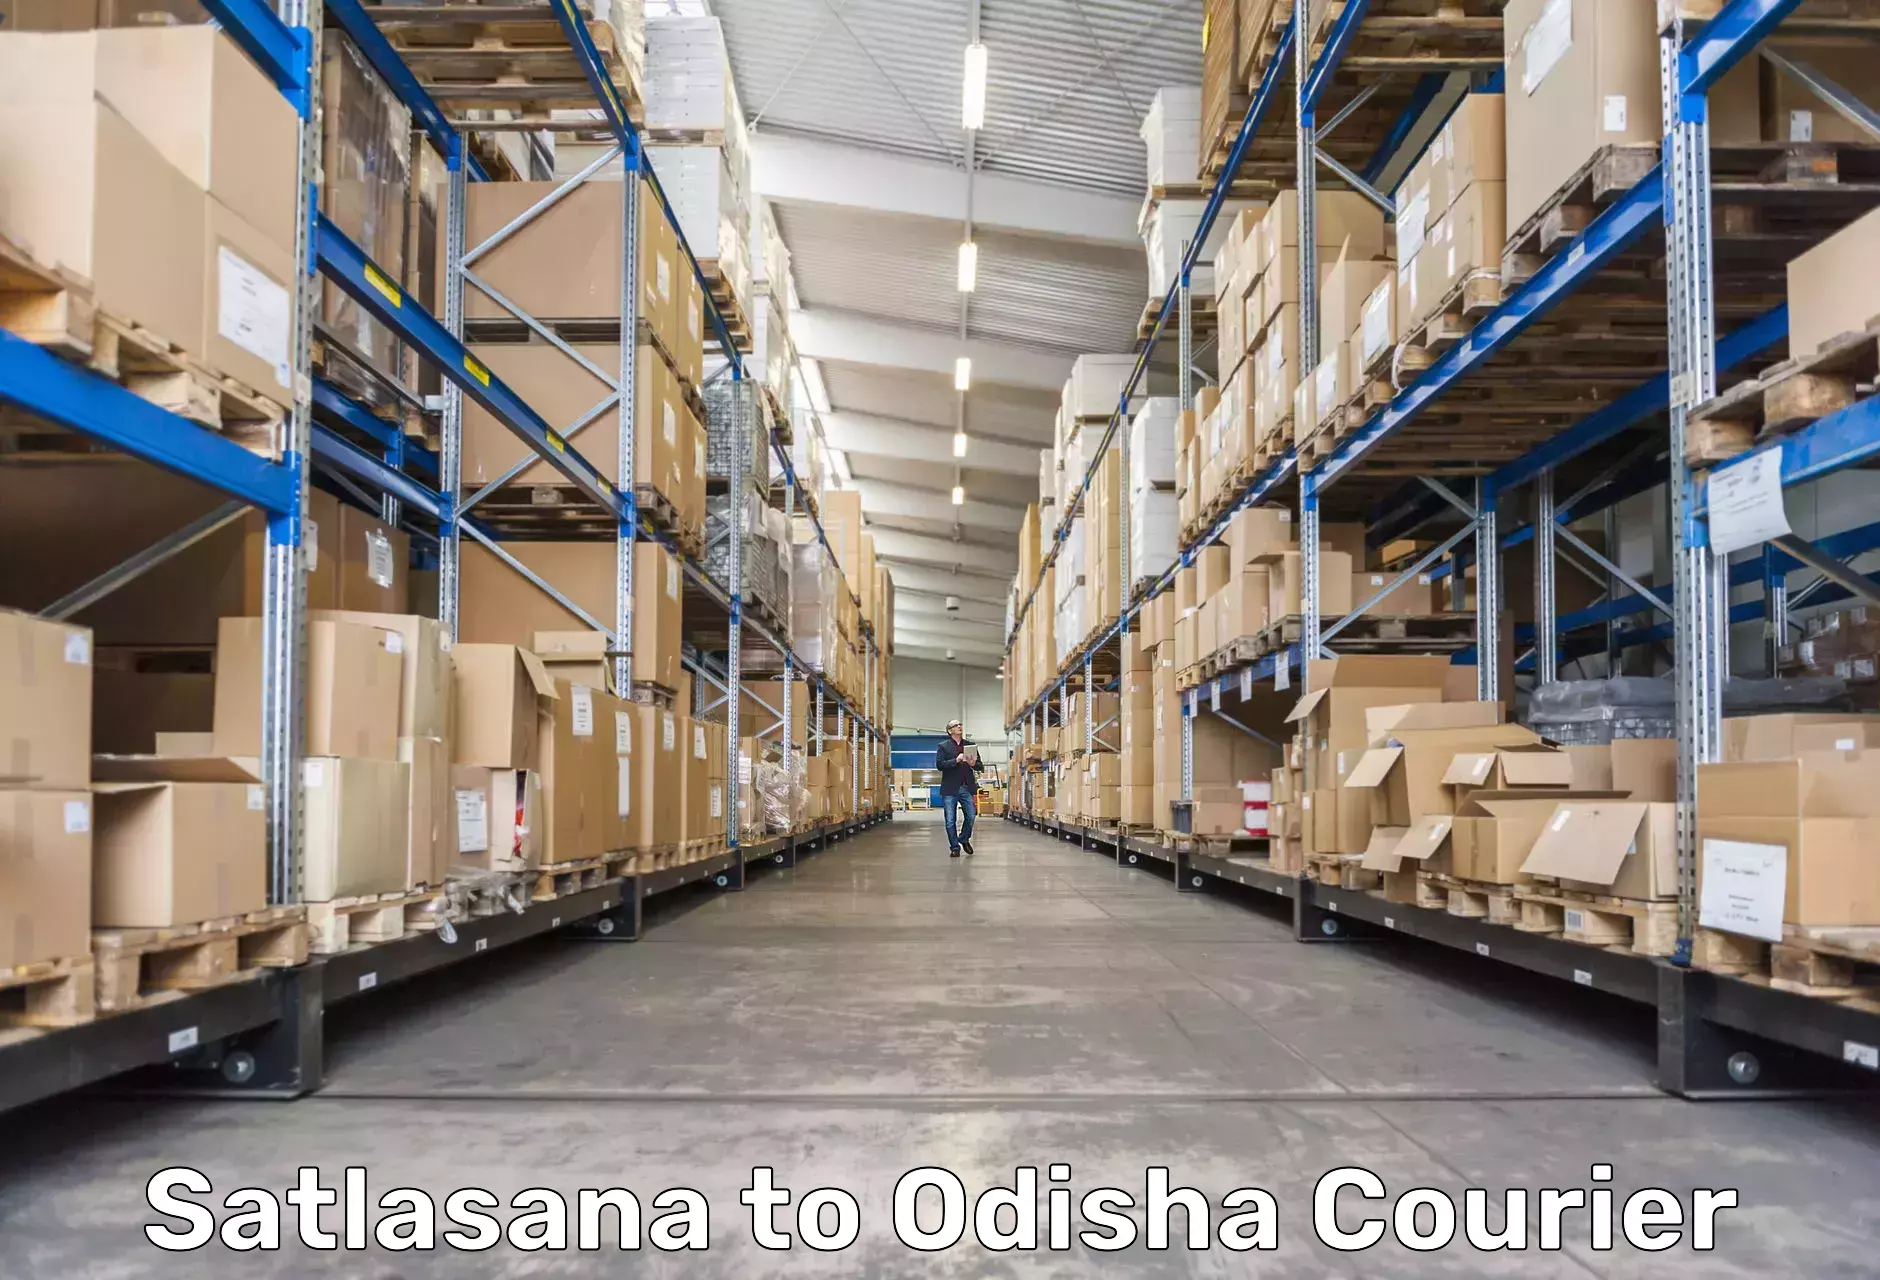 Modern courier technology Satlasana to Odisha